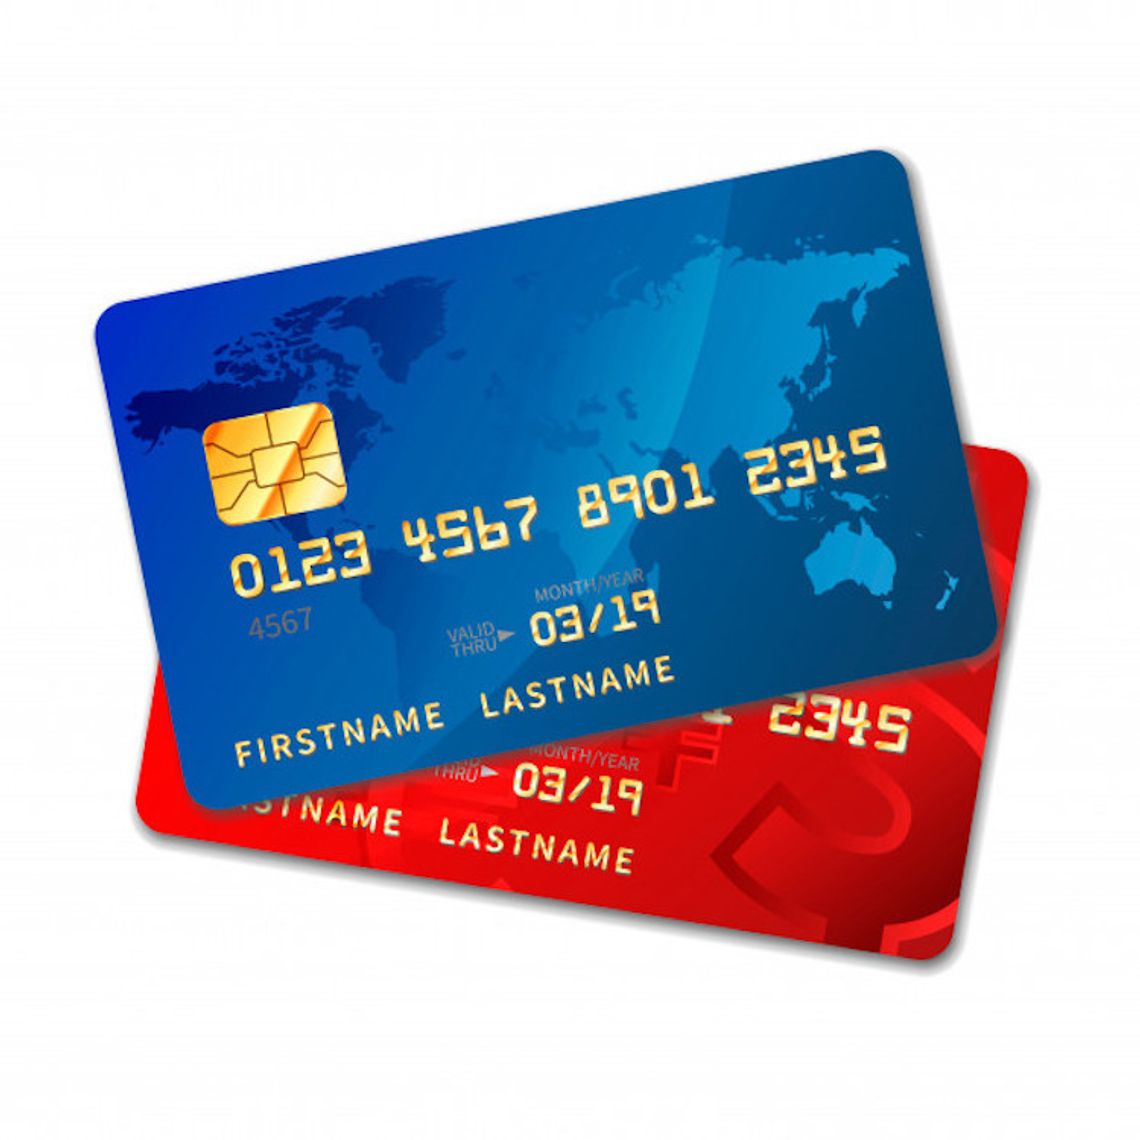 Czy warto korzystać z dwóch kart kredytowych w parze z inną osobą?